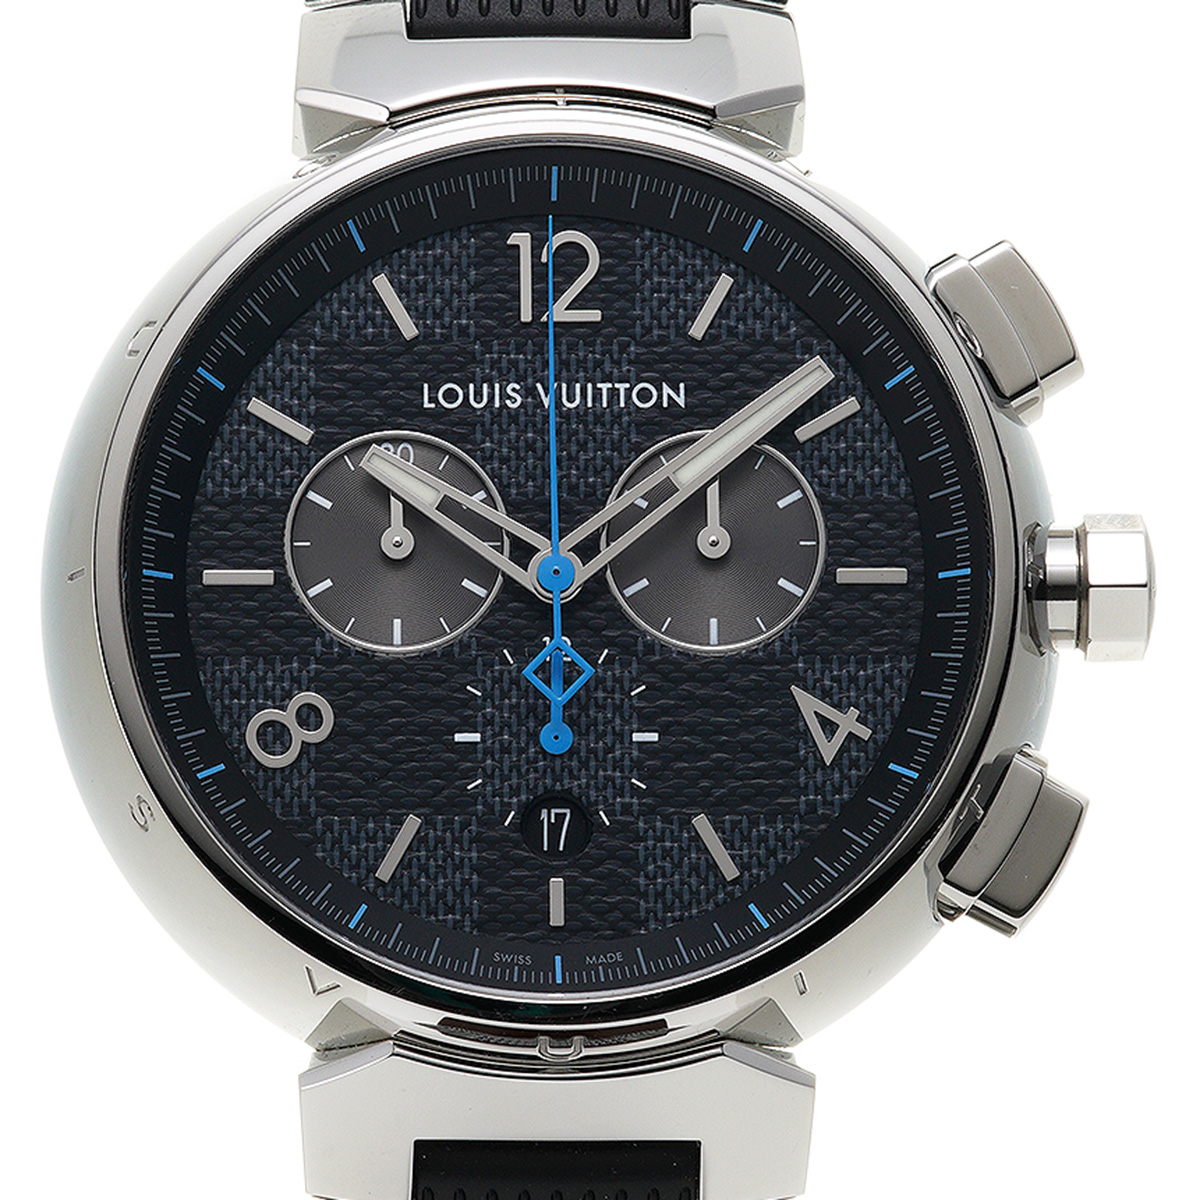 LOUIS VUITTON ルイヴィトン メンズ腕時計 タンブールダミエ Q1D01 シルバー文字盤 クォーツ